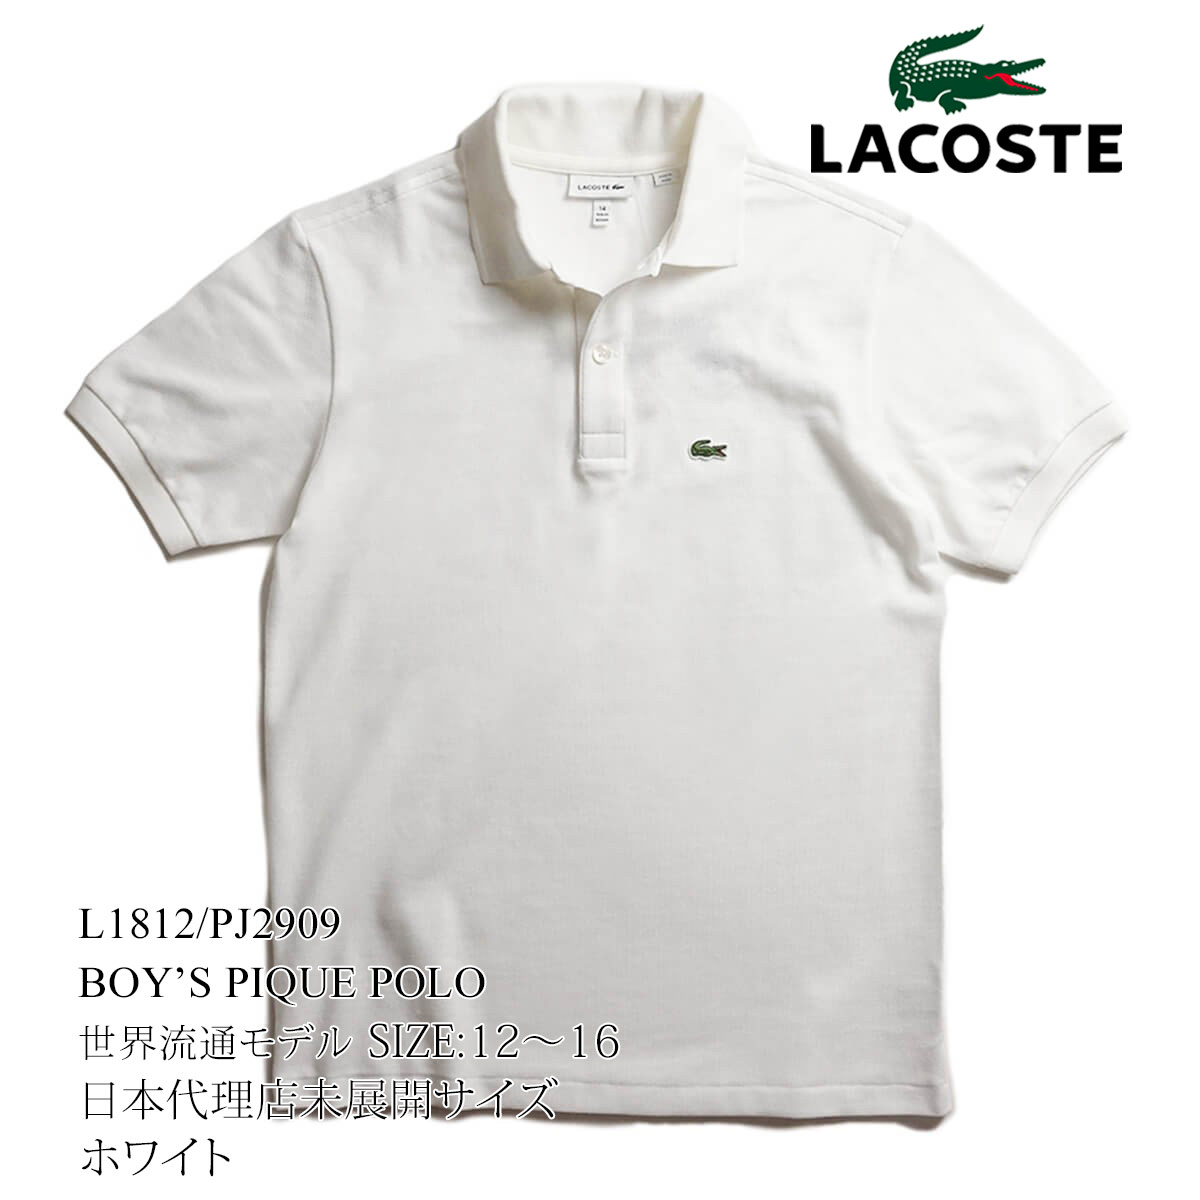 ラコステ LACOSTE PJ2909/L1812 ボーイズ 半袖 ポロシャツ 世界流通